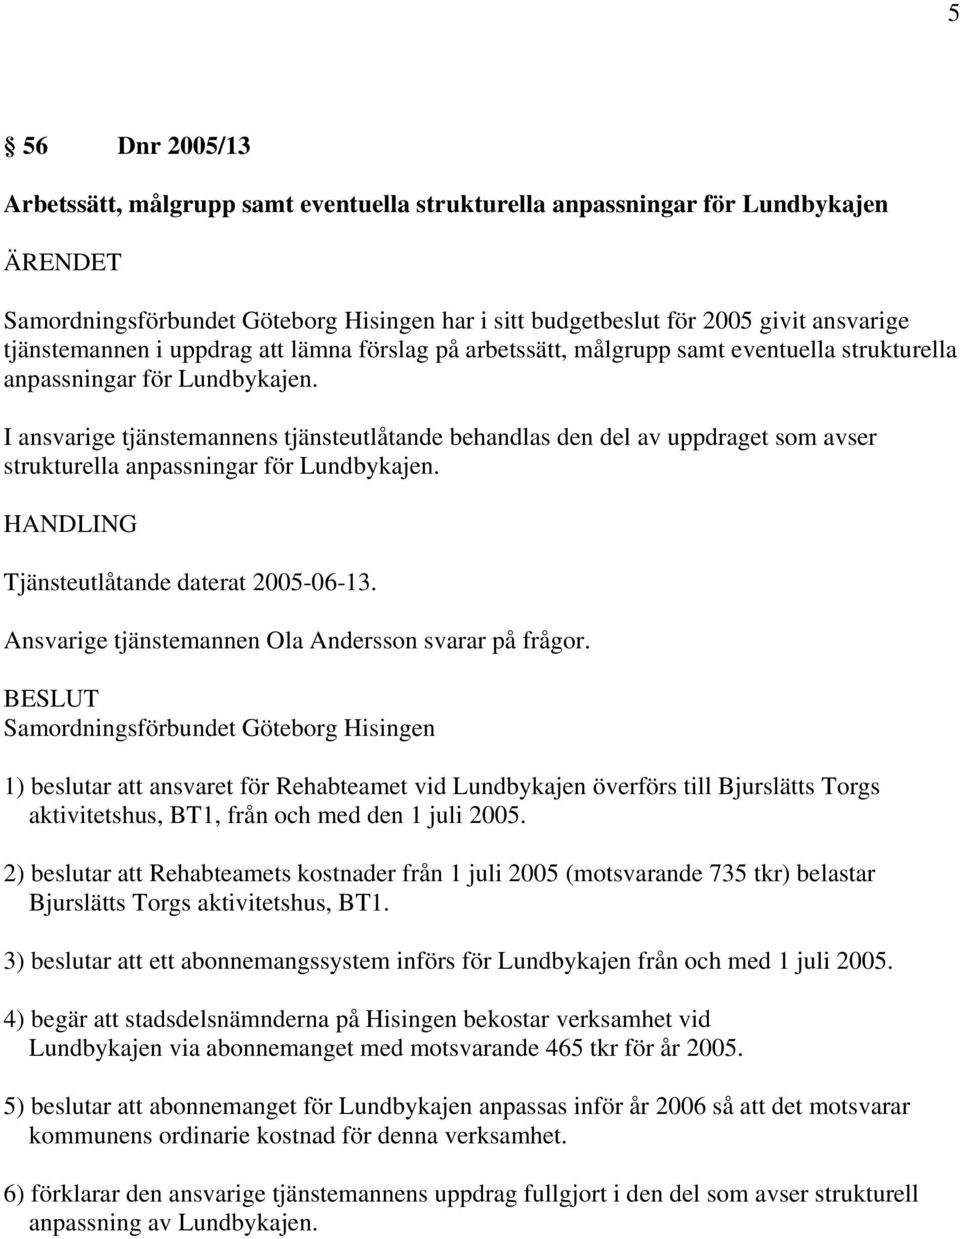 I ansvarige tjänstemannens tjänsteutlåtande behandlas den del av uppdraget som avser strukturella anpassningar för Lundbykajen. Tjänsteutlåtande daterat 2005-06-13.